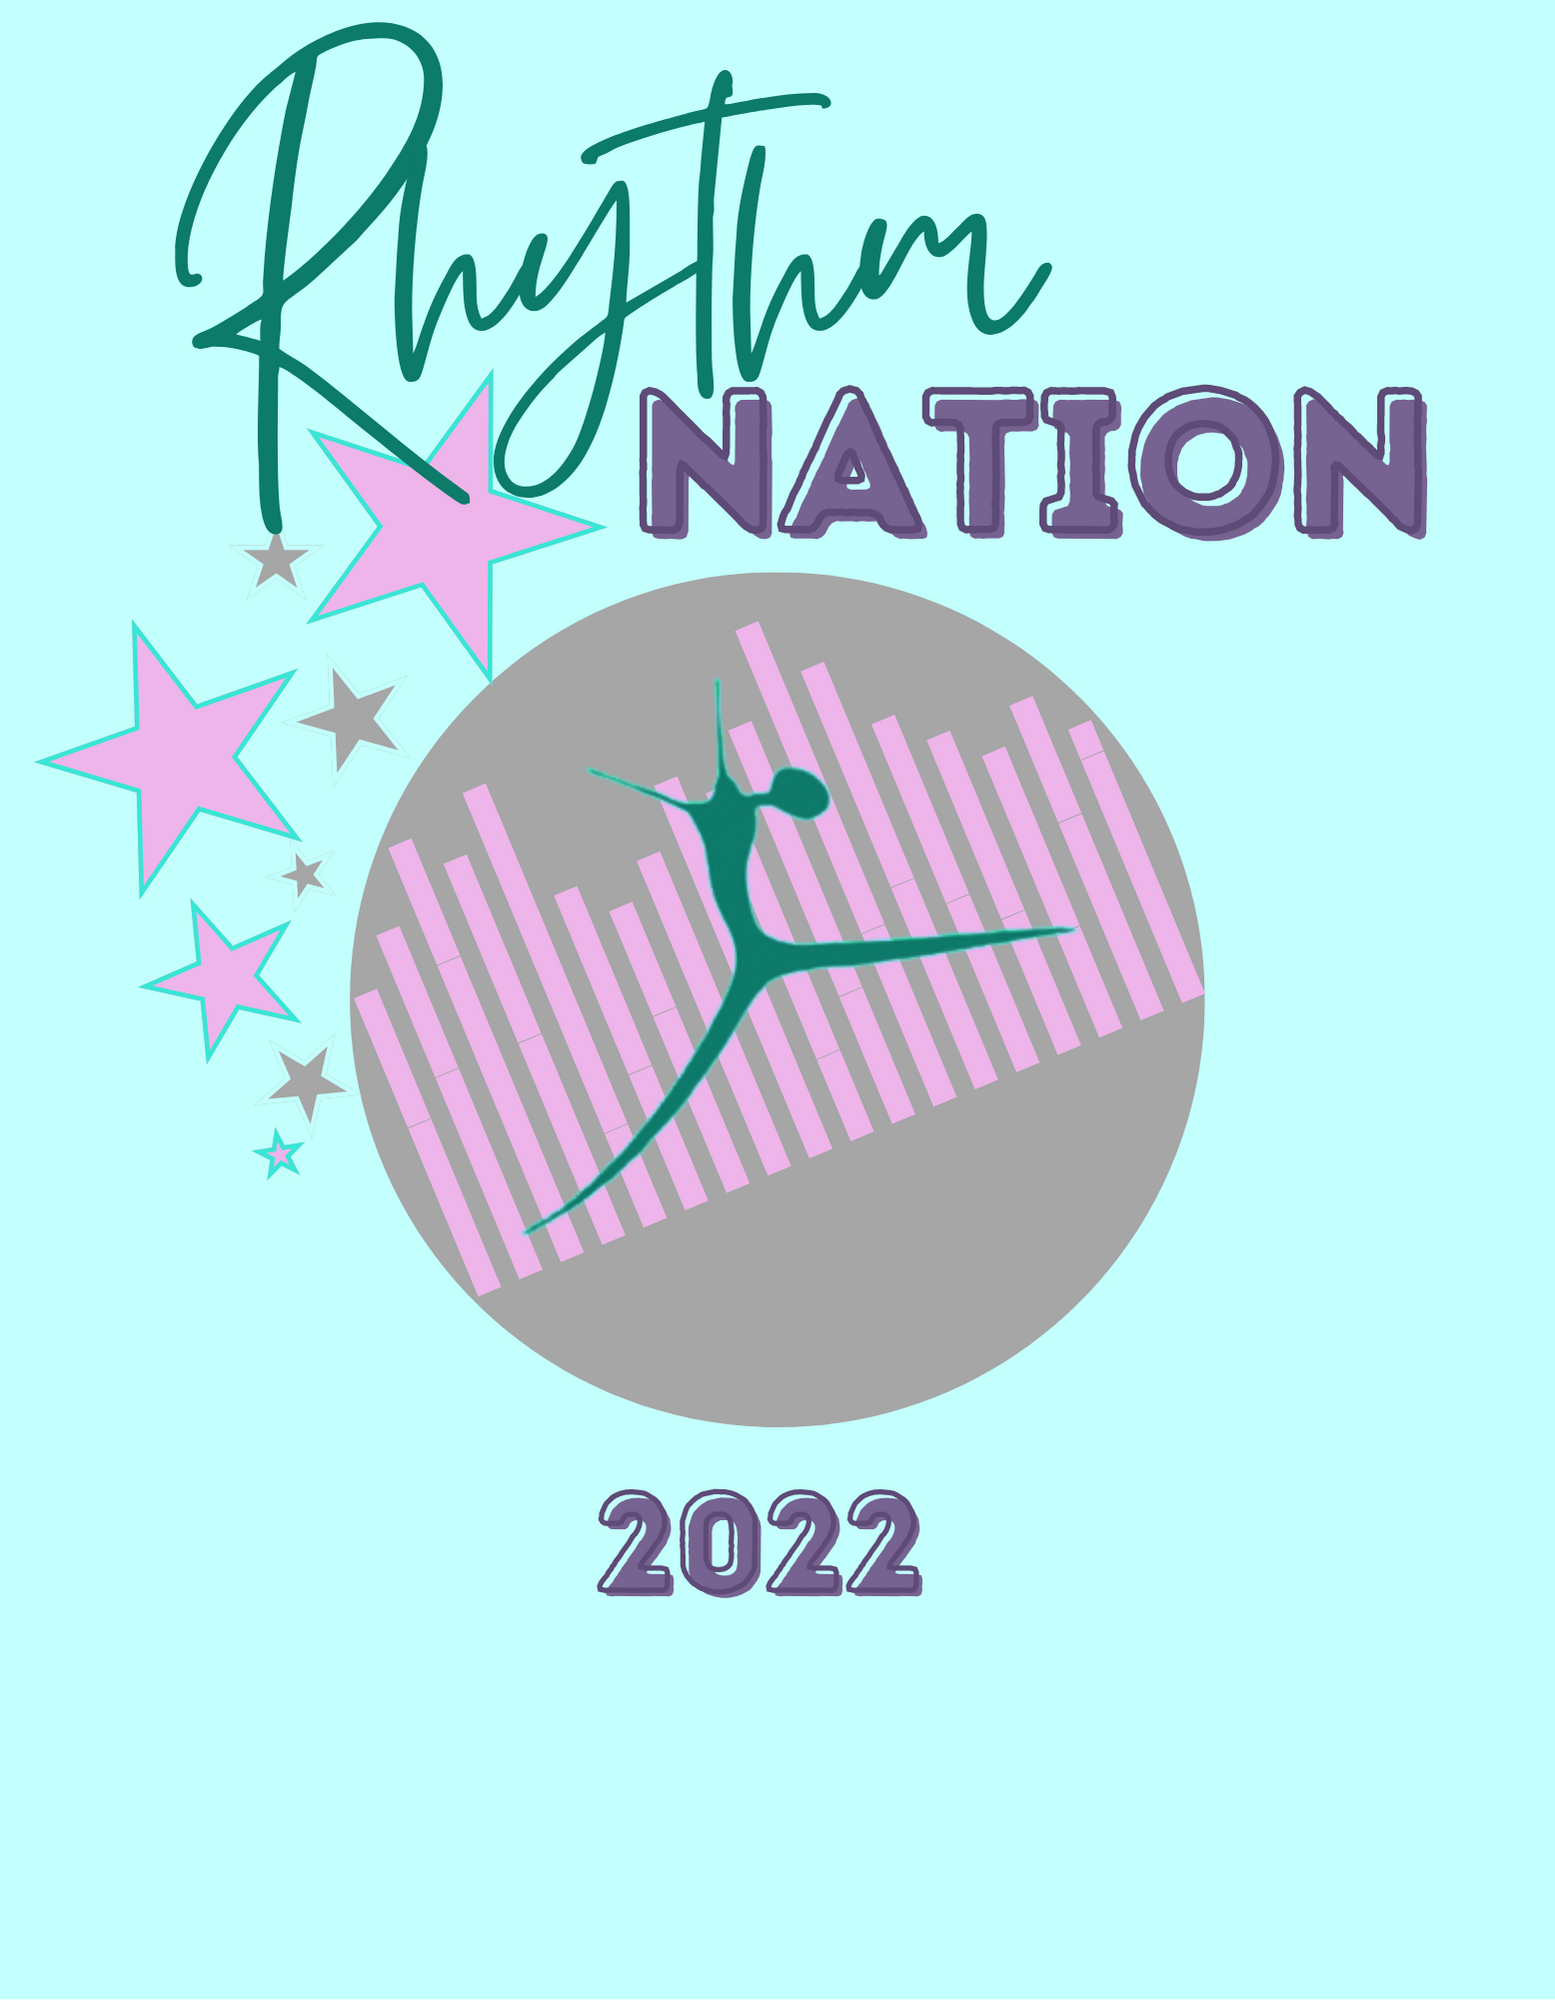 RHYTHM NATION LOGO